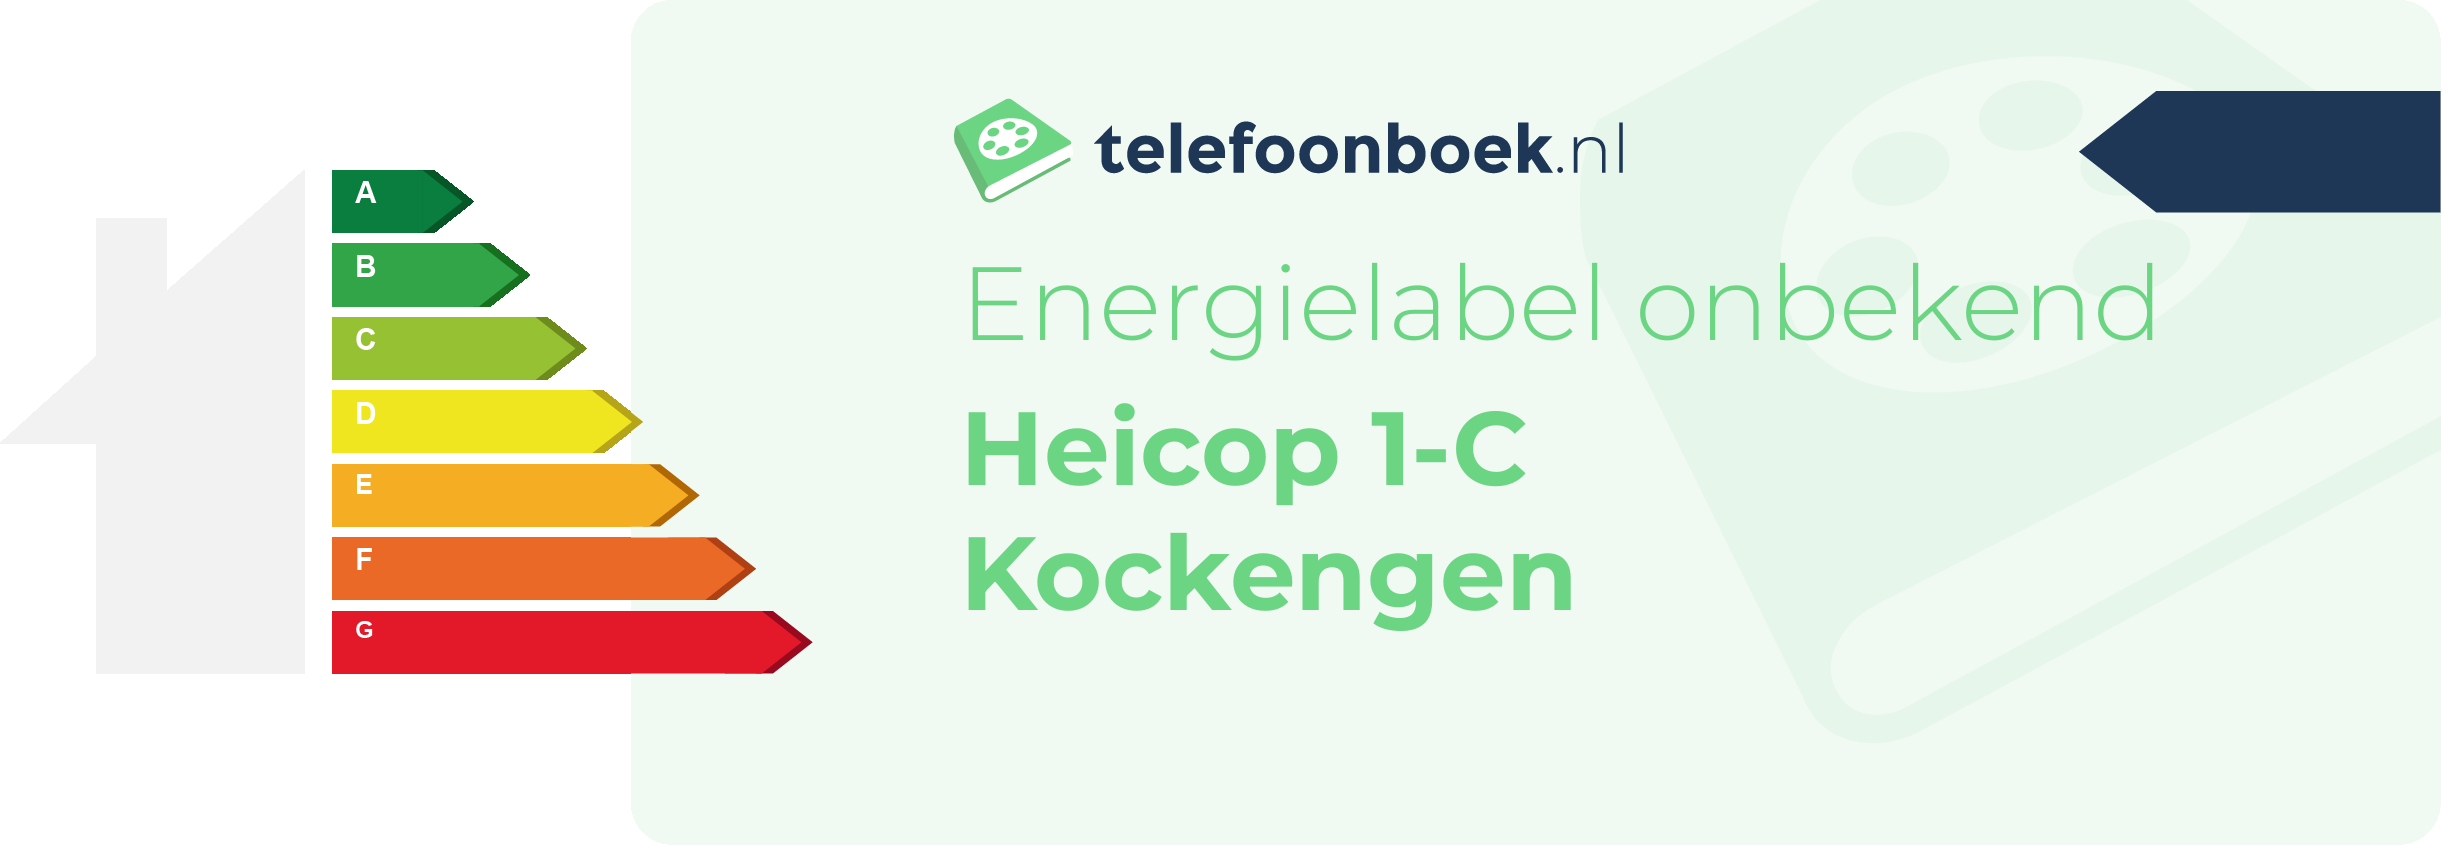 Energielabel Heicop 1-C Kockengen